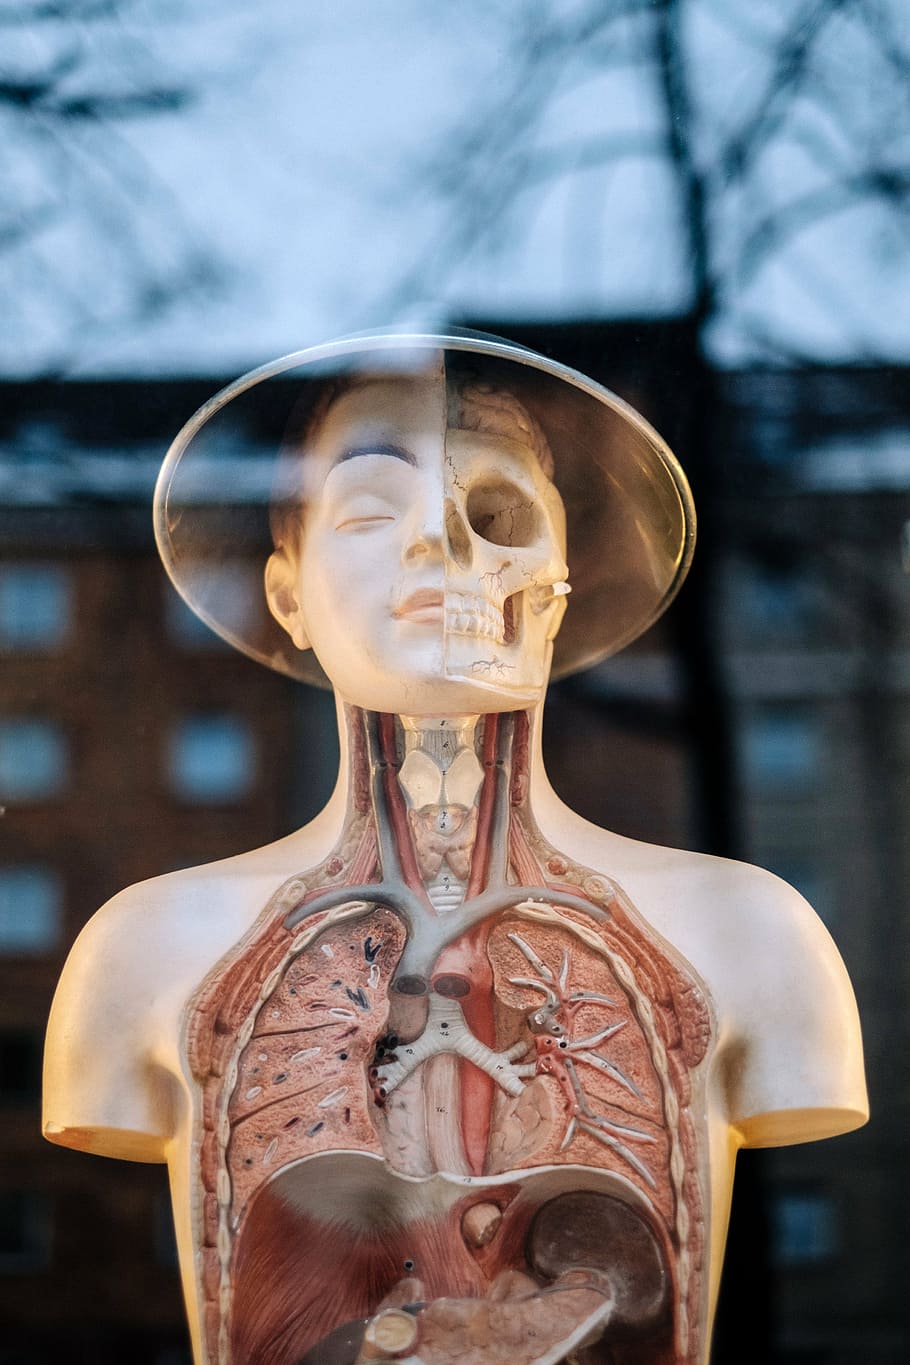 anatomia humana manequim, humano, anatomia, modelo, parte superior do corpo, estrutura, médico, órgão, esqueleto, ombro